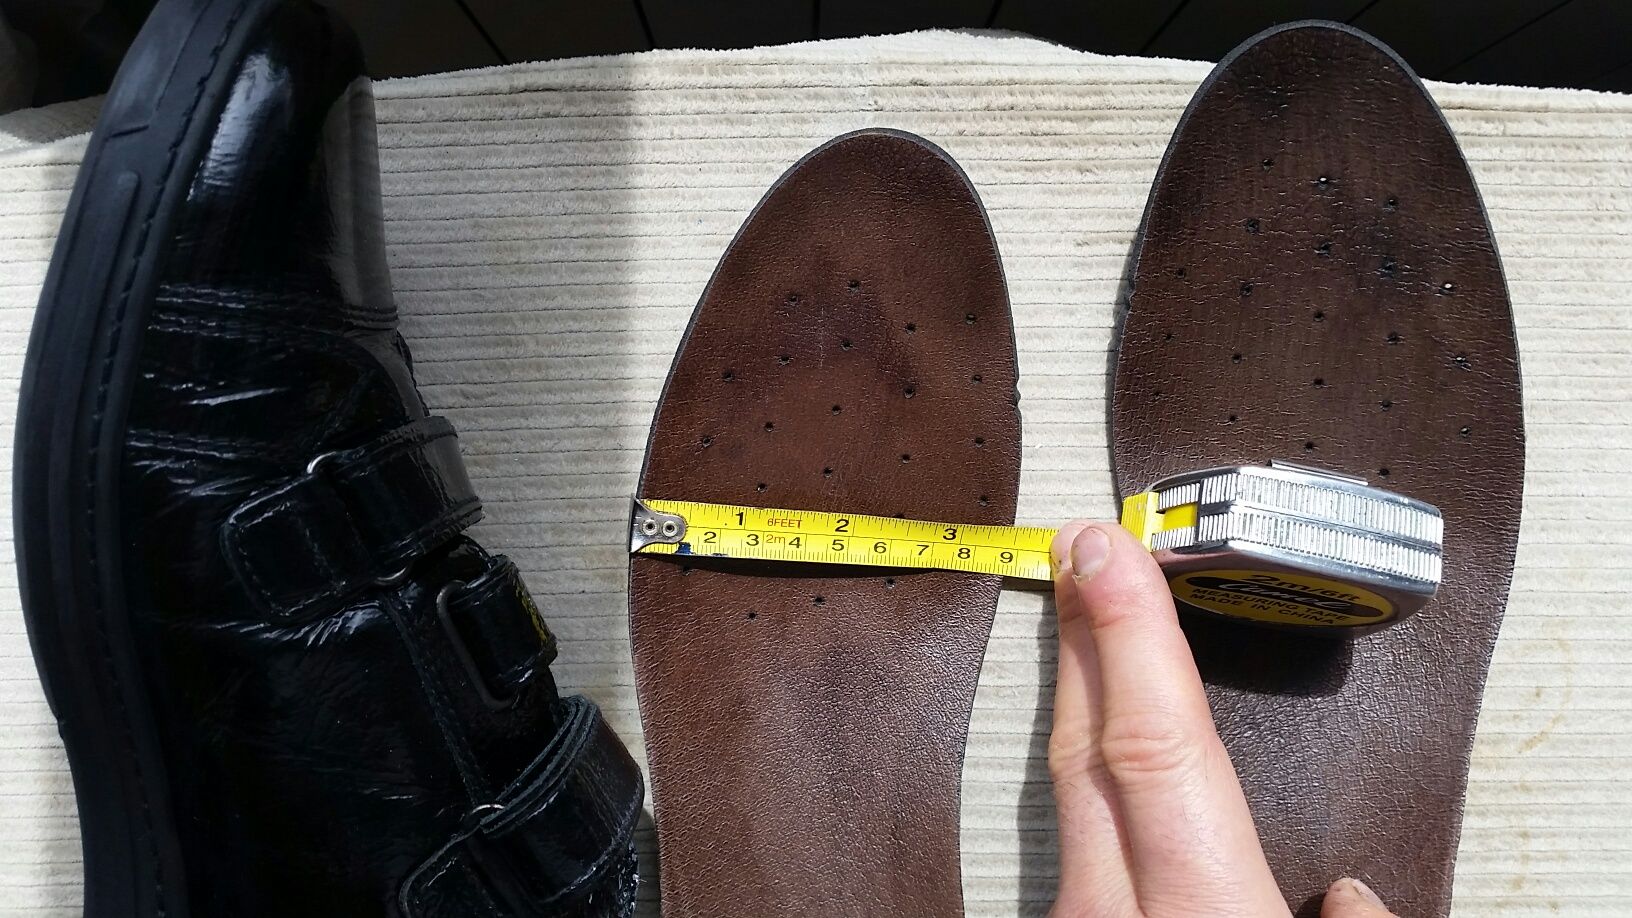 Pantofi Nero Giardini, piele, lac, black, 43, noi